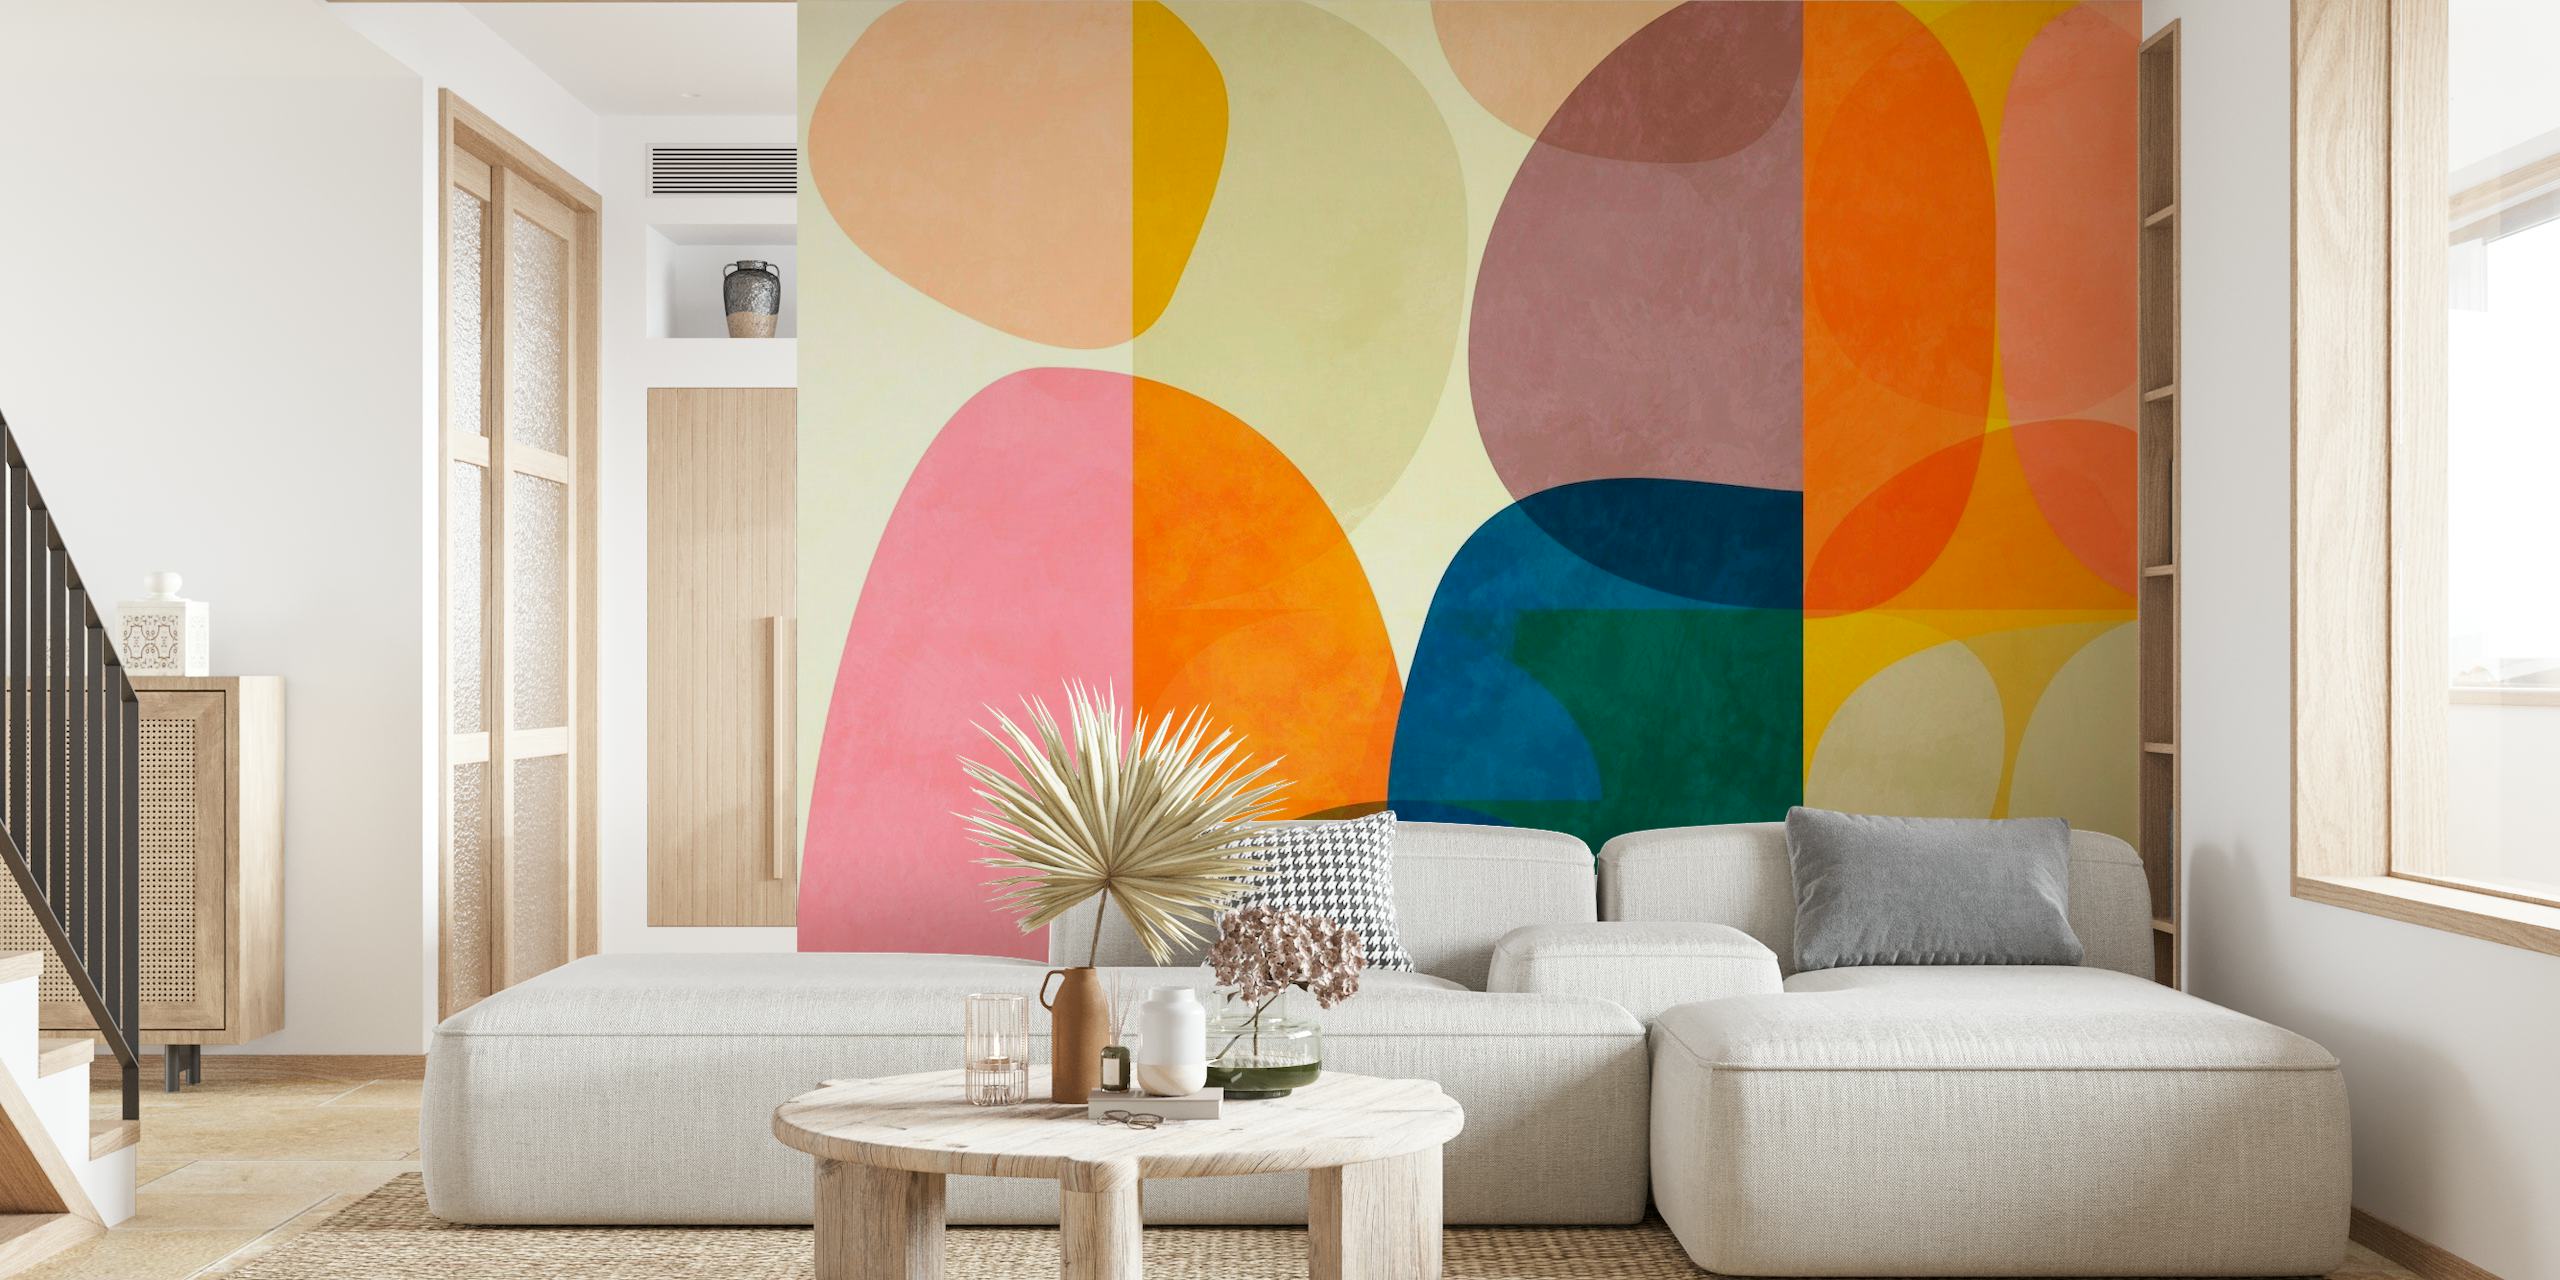 Šareni apstraktni umjetnički zidni mural s preklapajućim geometrijskim oblicima u različitim tonovima